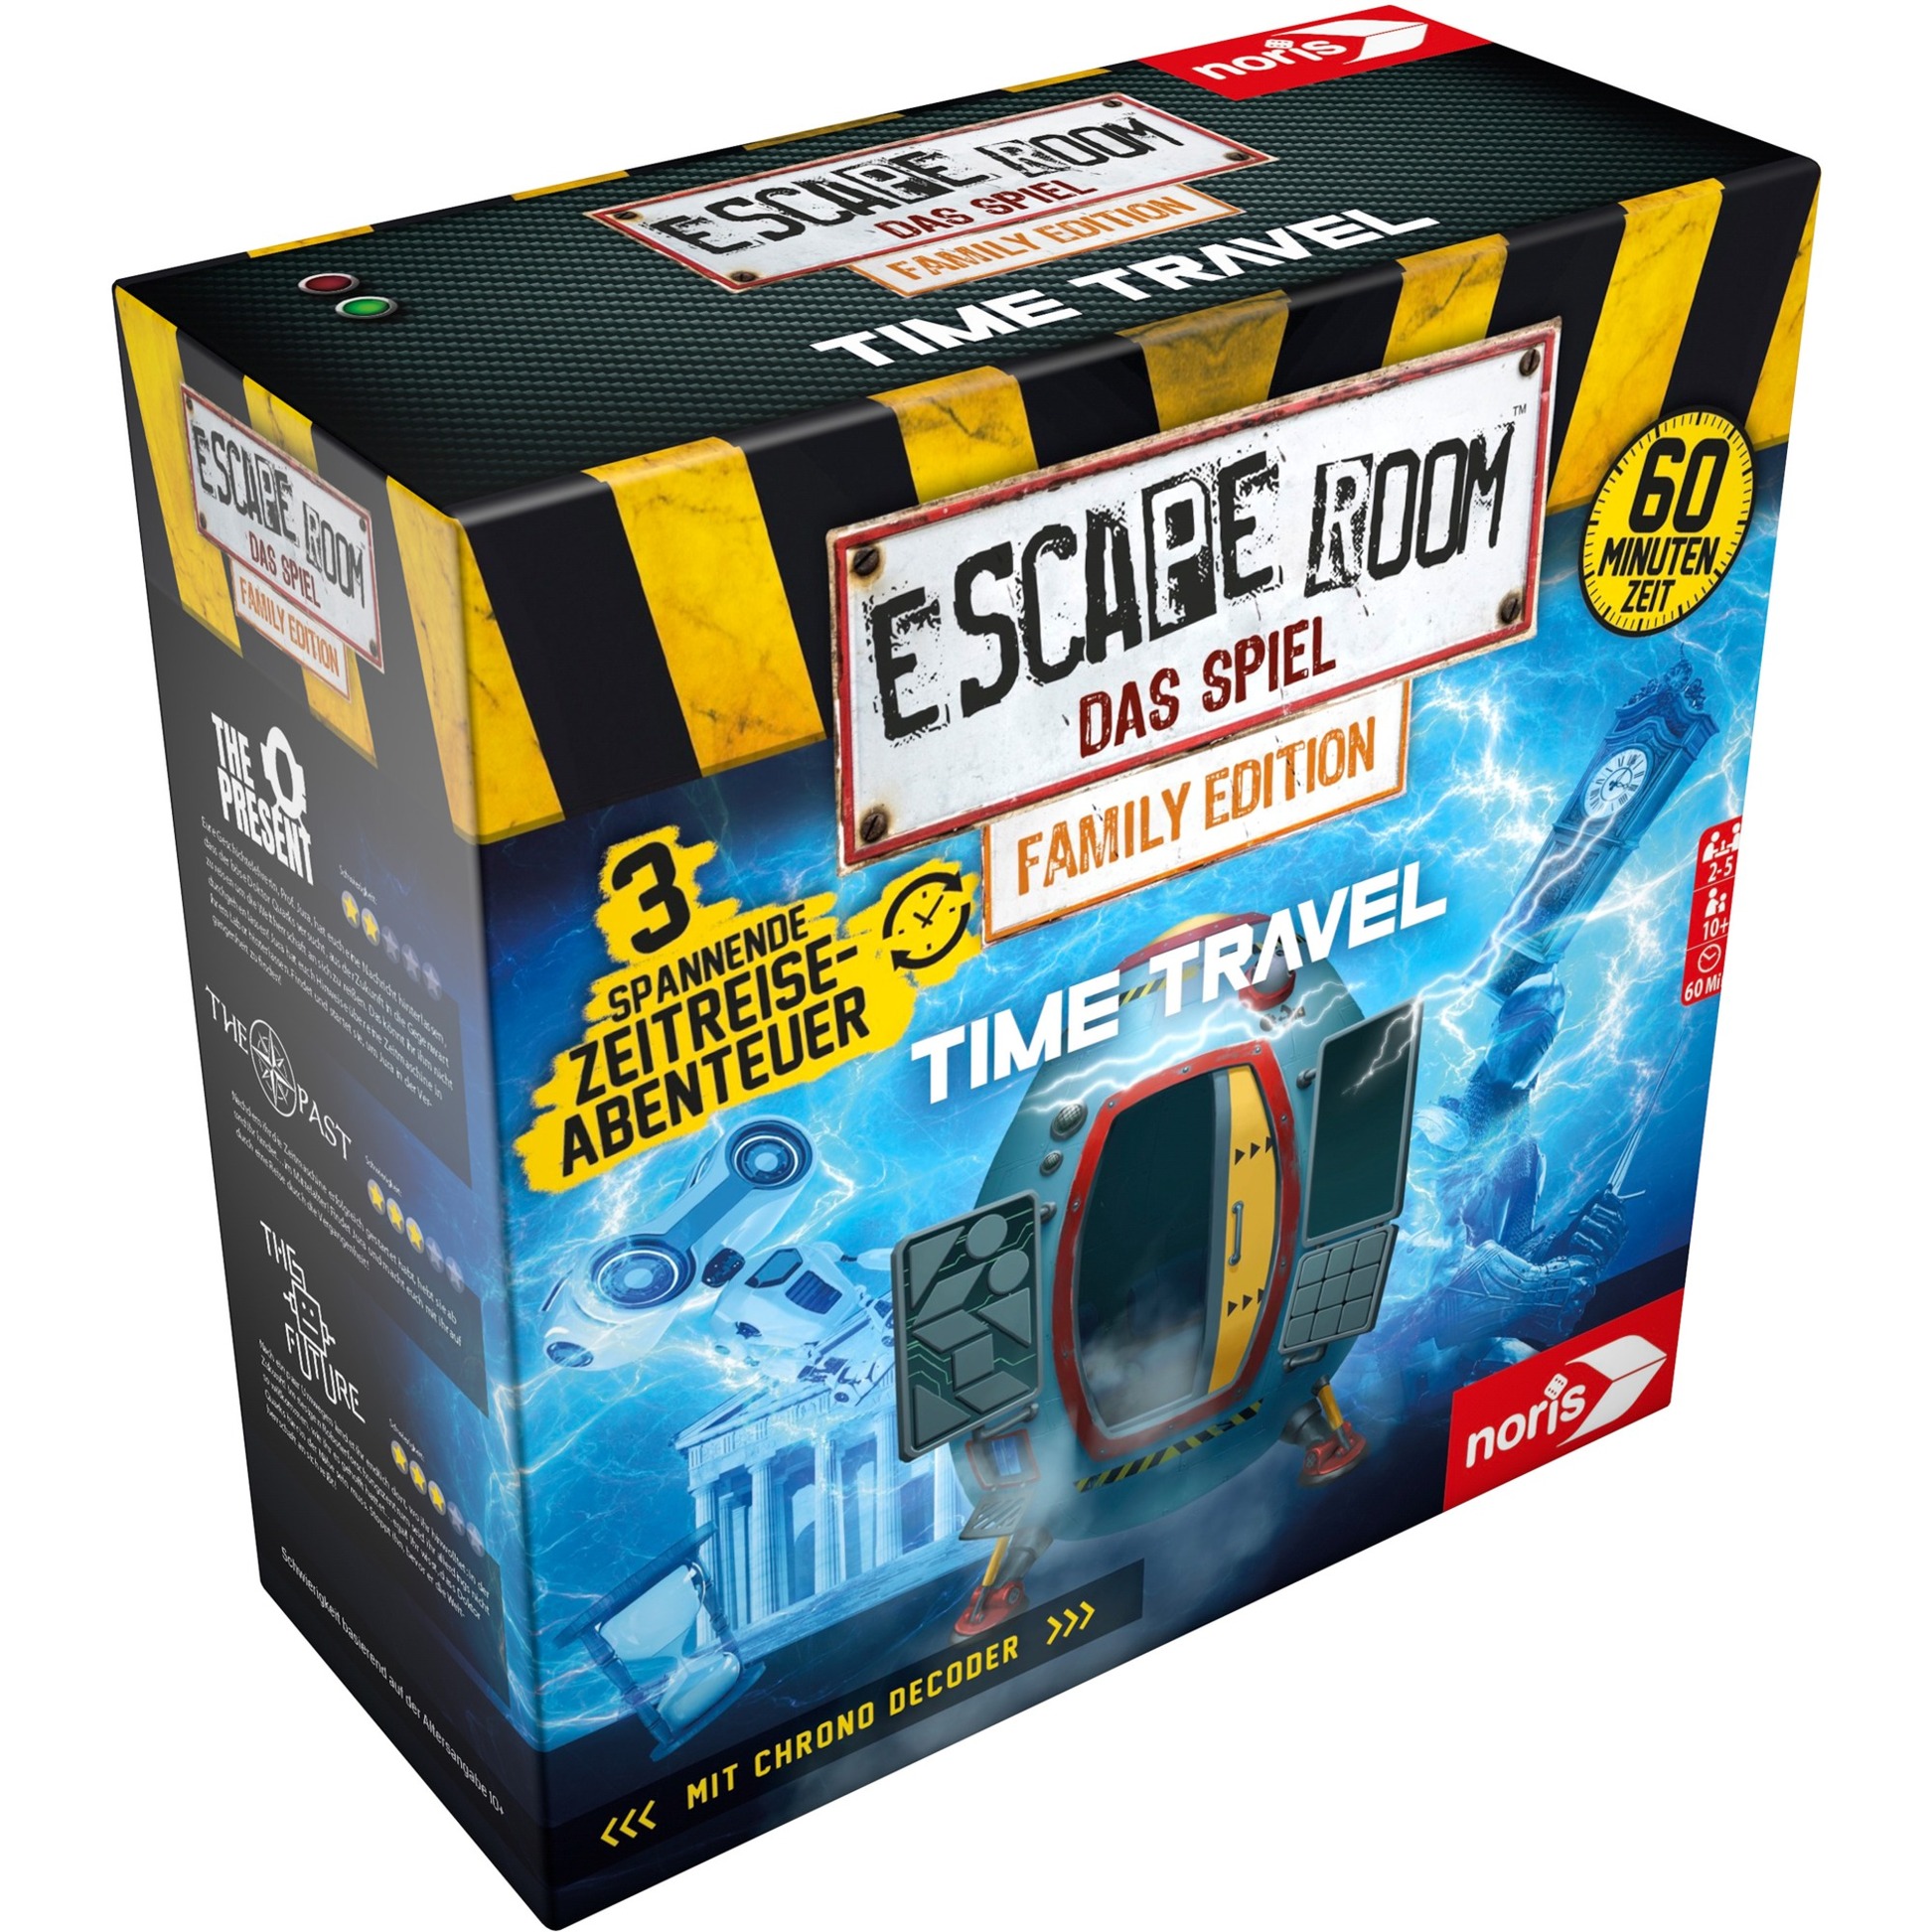 Image of Alternate - Escape Room - Das Spiel Family Edition Timetravel, Partyspiel online einkaufen bei Alternate